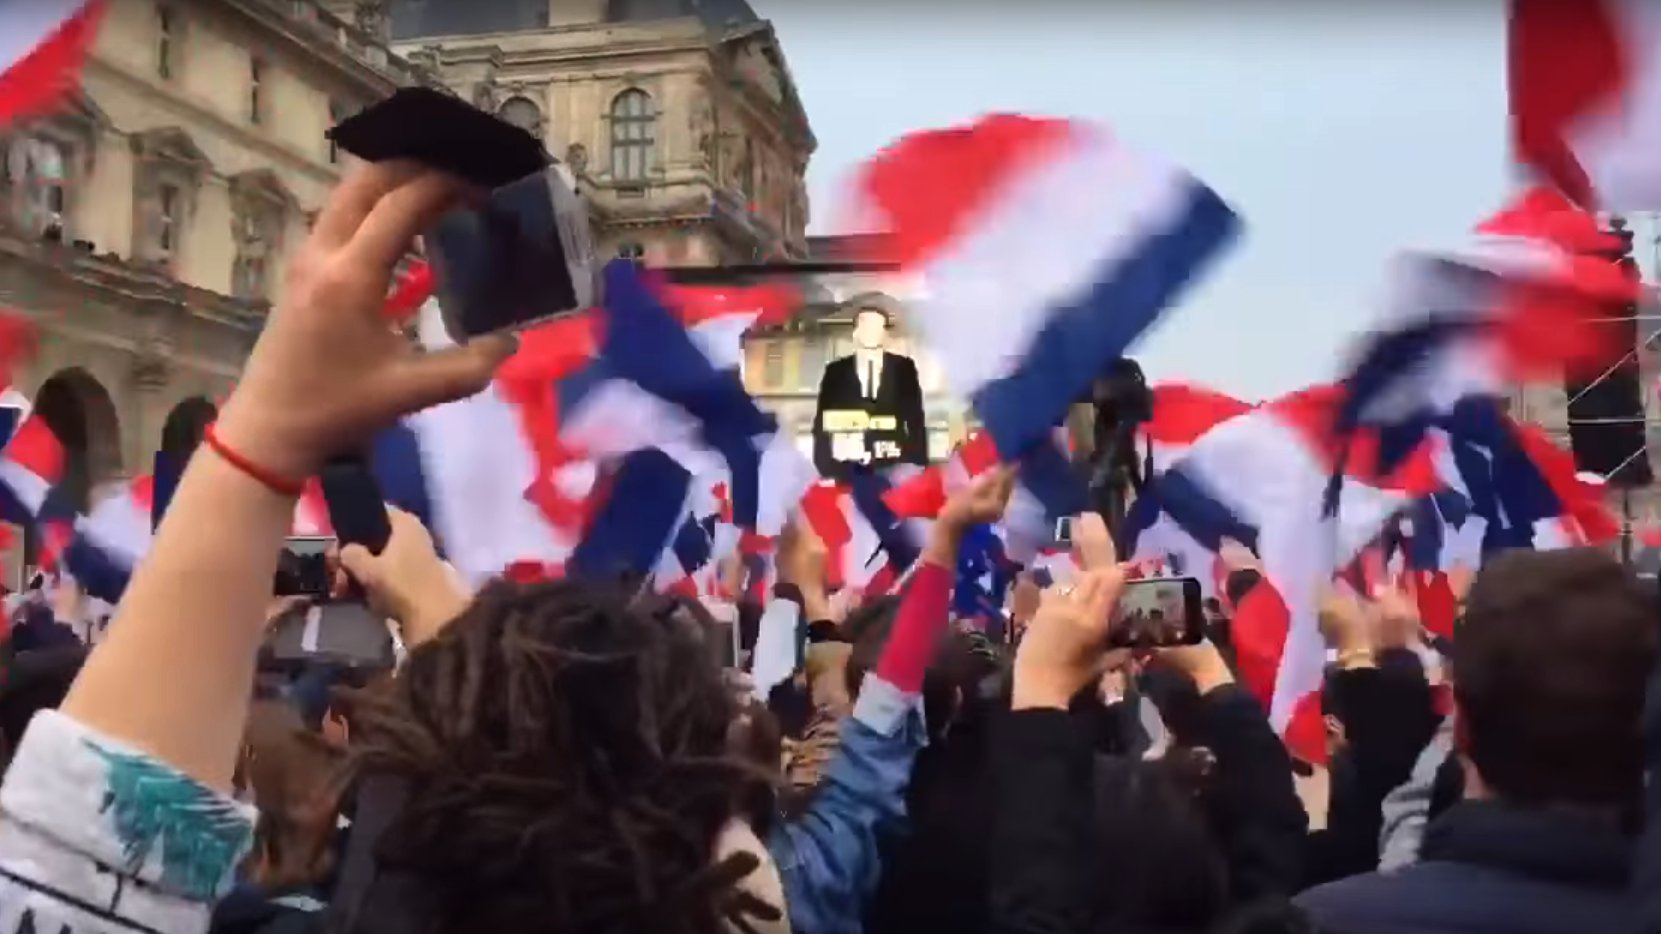 Pariser Louvre: Macrons Sieg wird bekanntgegeben